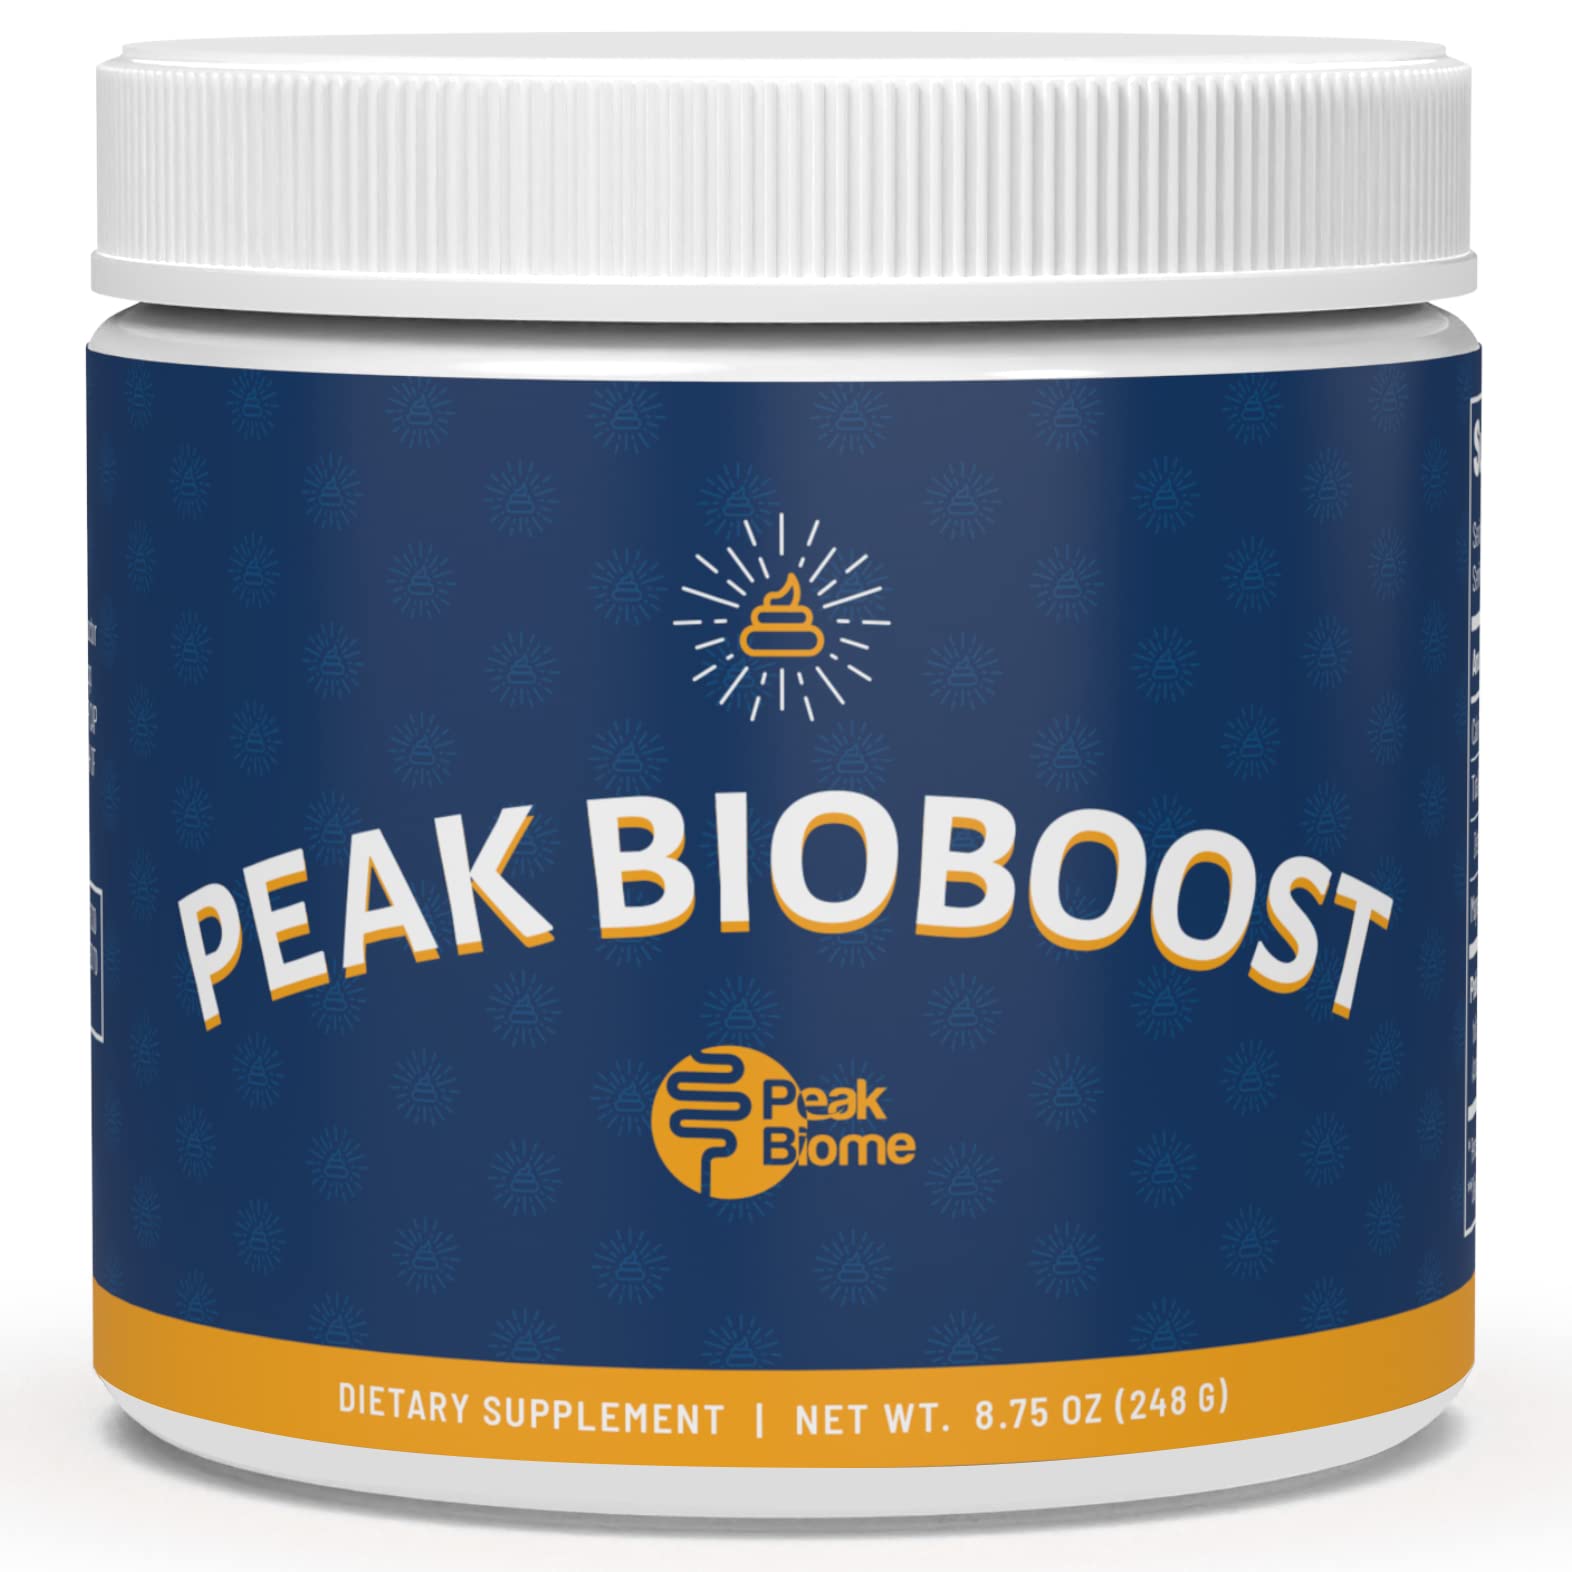 does peak bioboost work